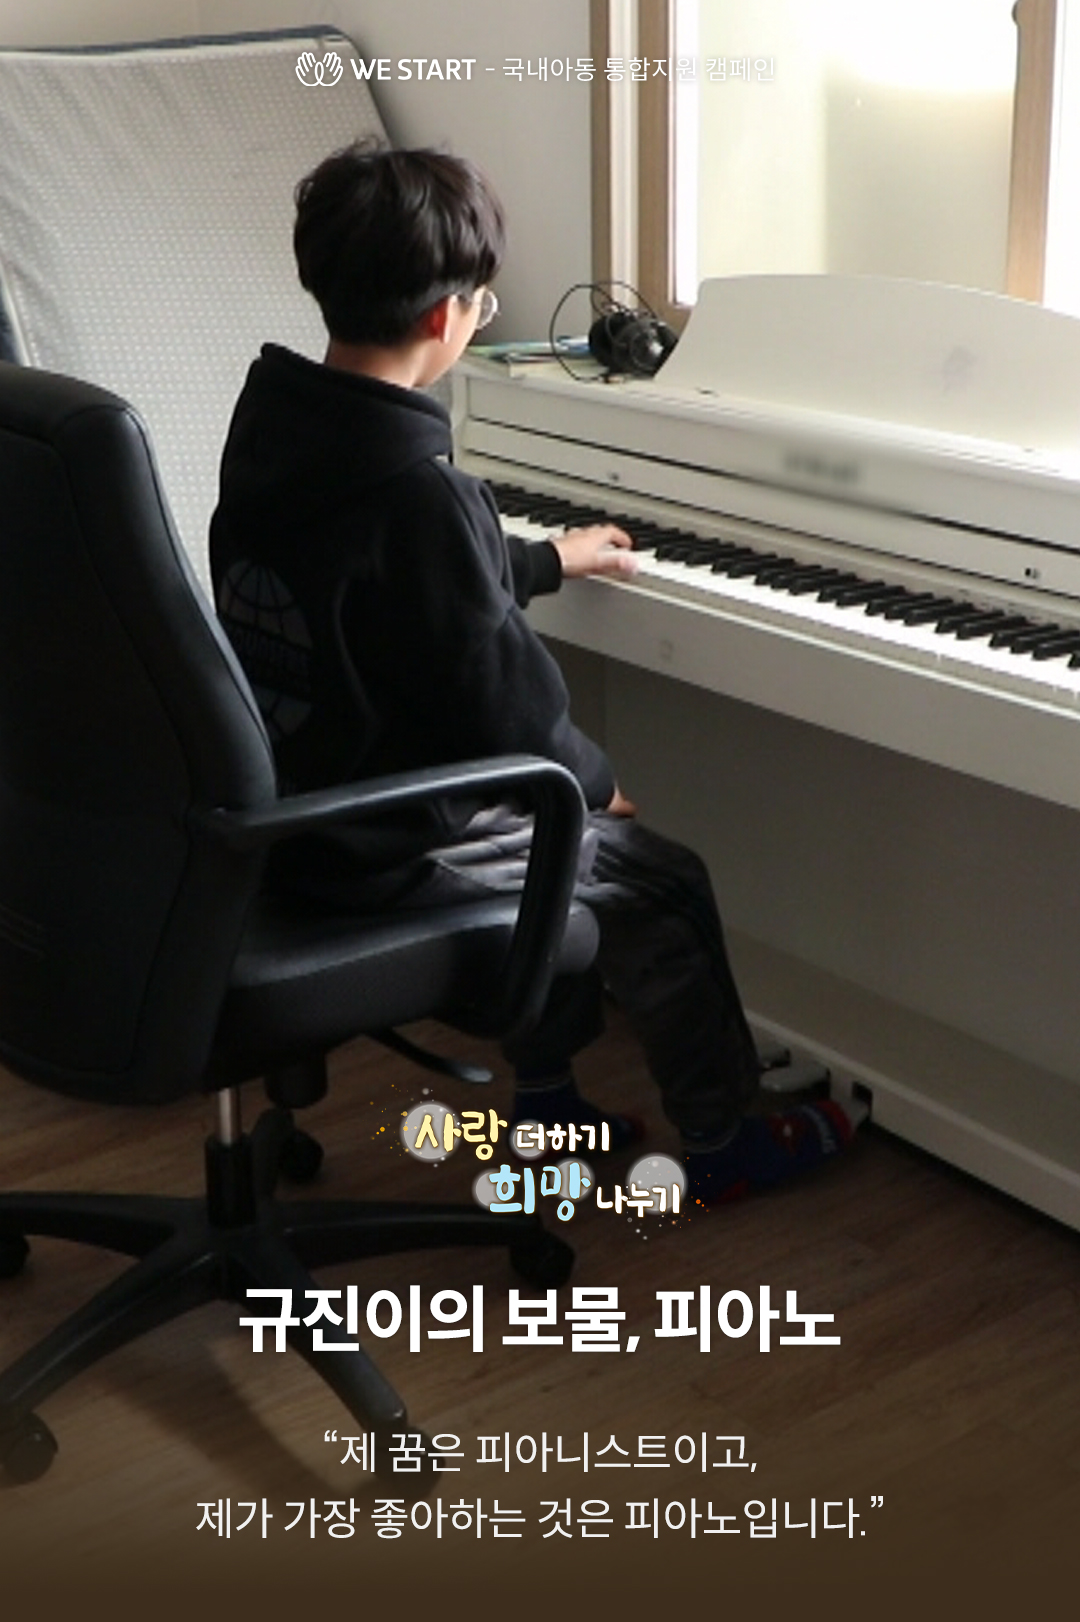 JTBC 사랑더하기 희망나누기, 규진이의 보물 피아노 후원 캠페인